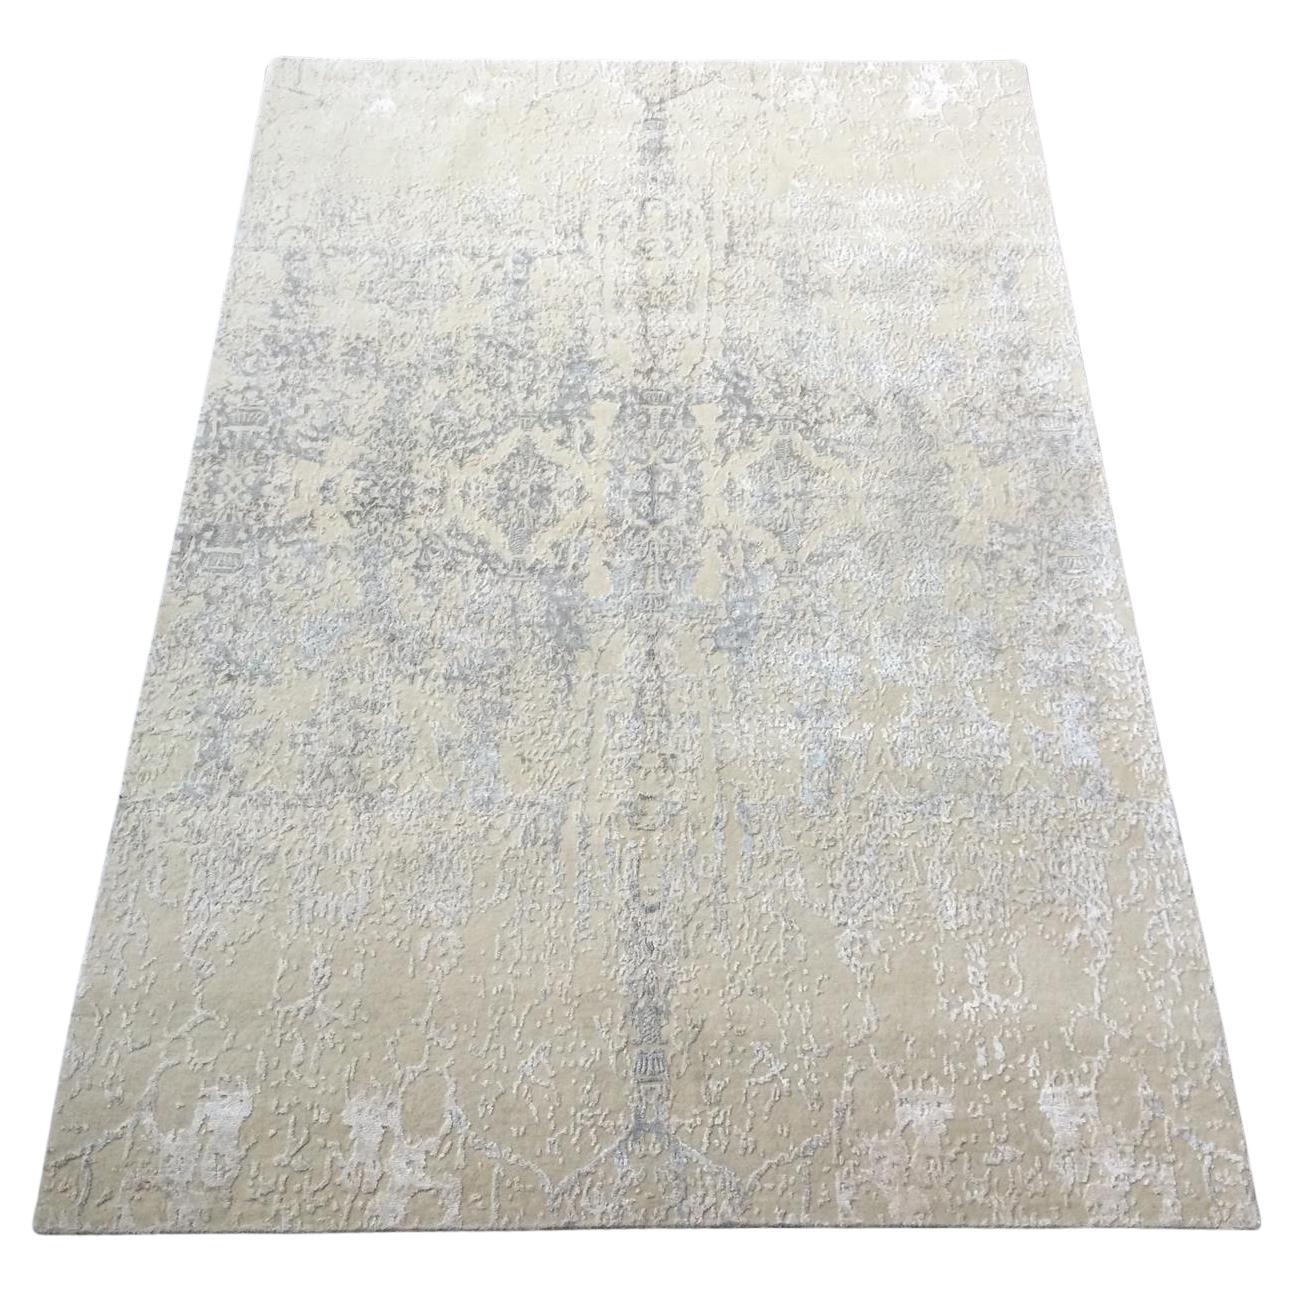 Abstrakter handgefertigter Teppich aus Seide und Wolle in Grau. 2,45 x 1,75 m.